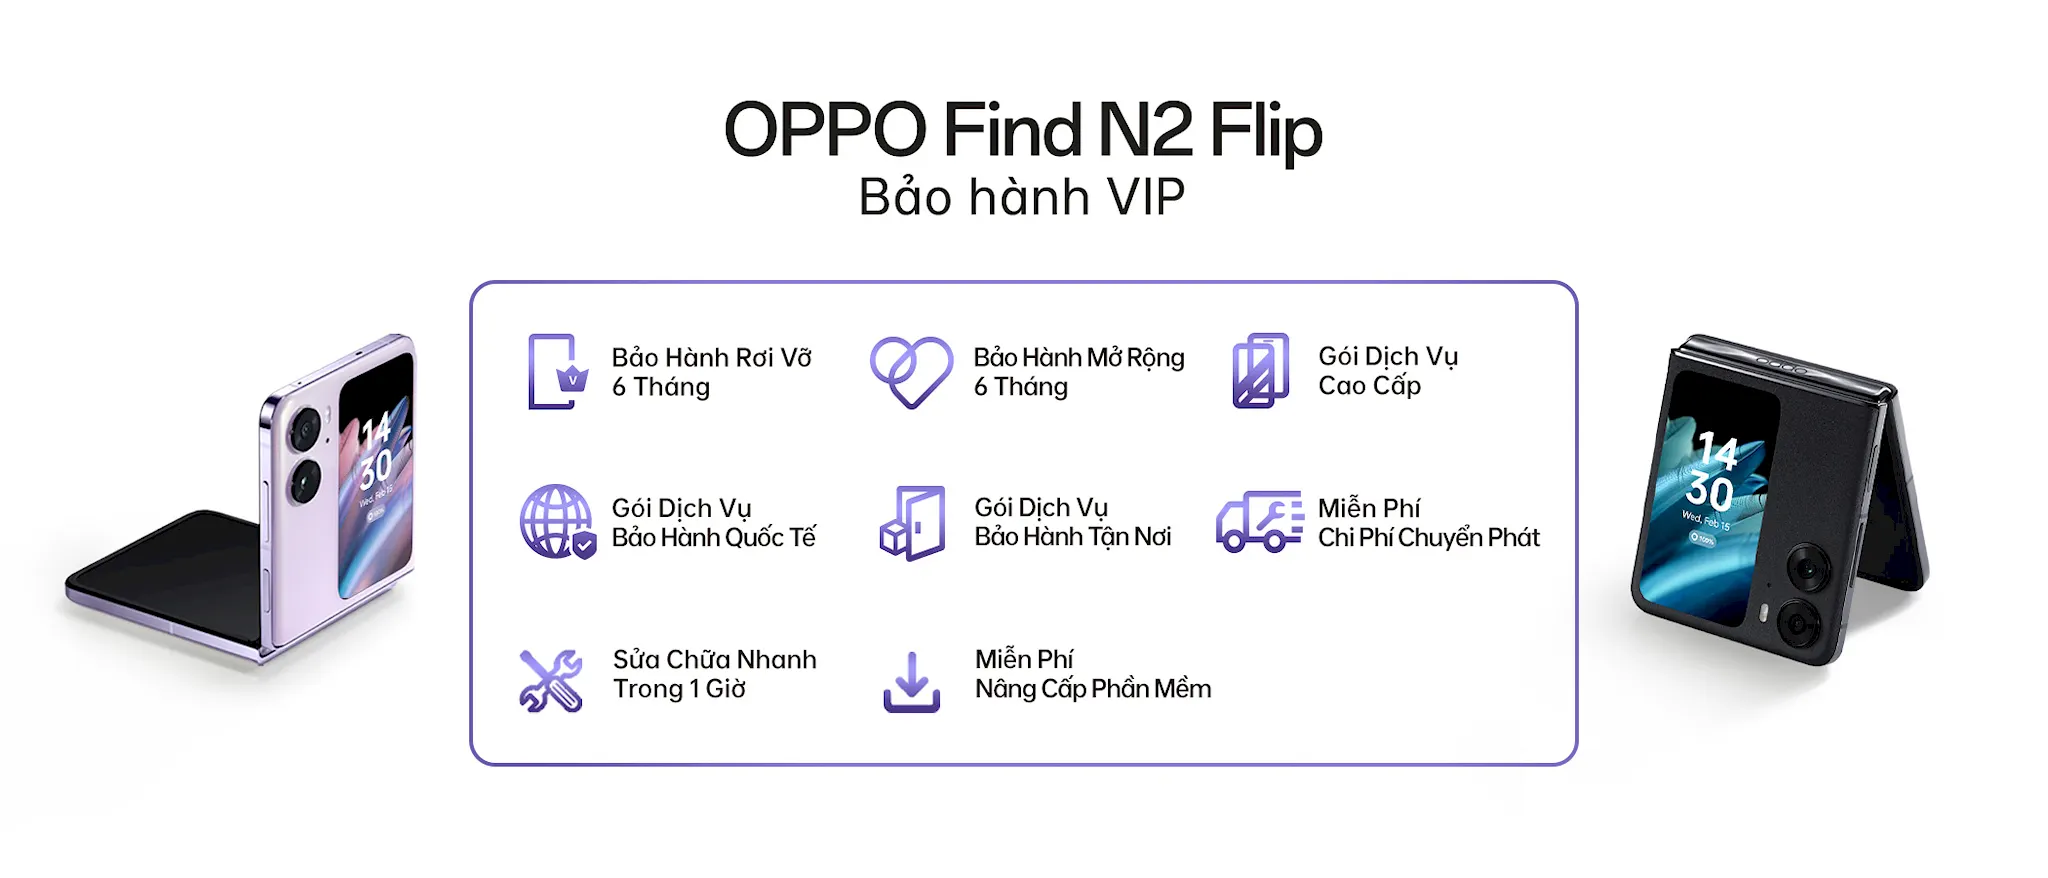 OPPO tổ chức chuỗi sự kiện trải nghiệm Find N2 Flip, mang công nghệ điện thoại gập mới nhất đến người dùng Việt Nam